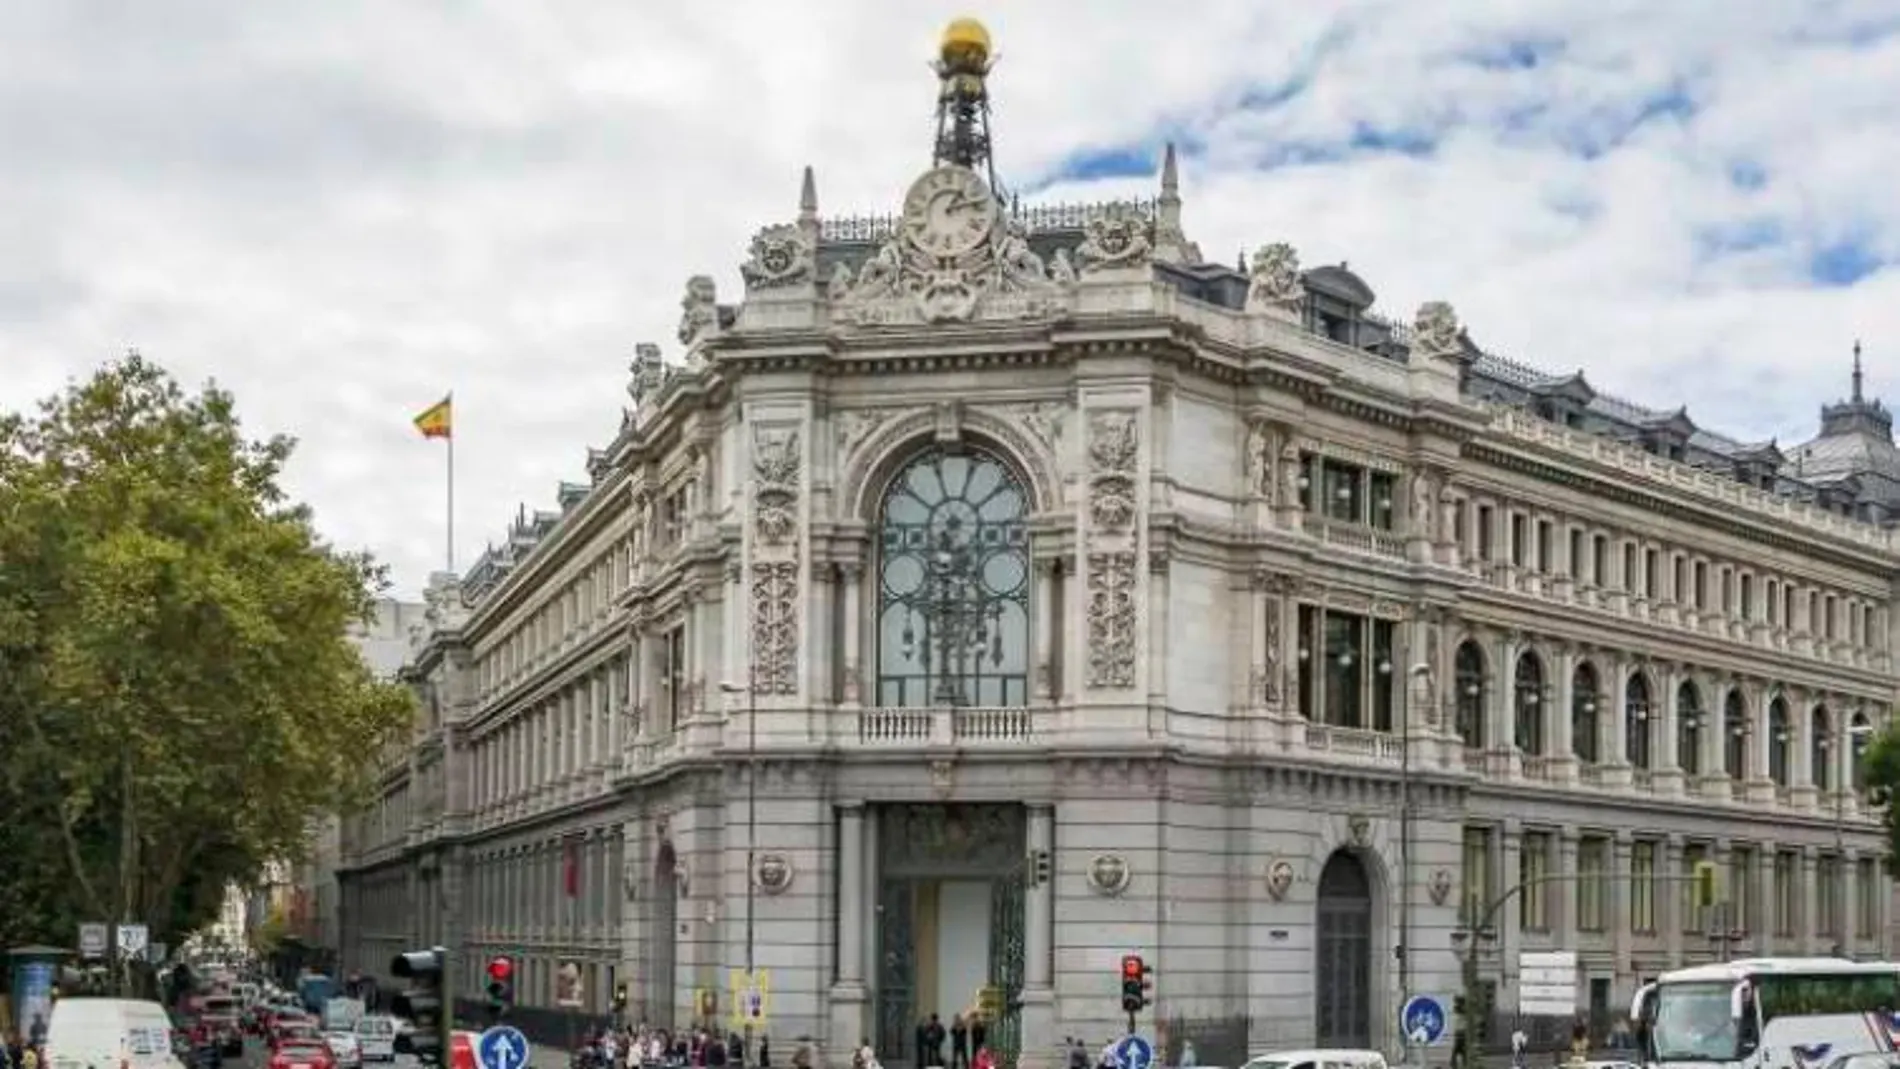 Sede del Banco de España en Madrid